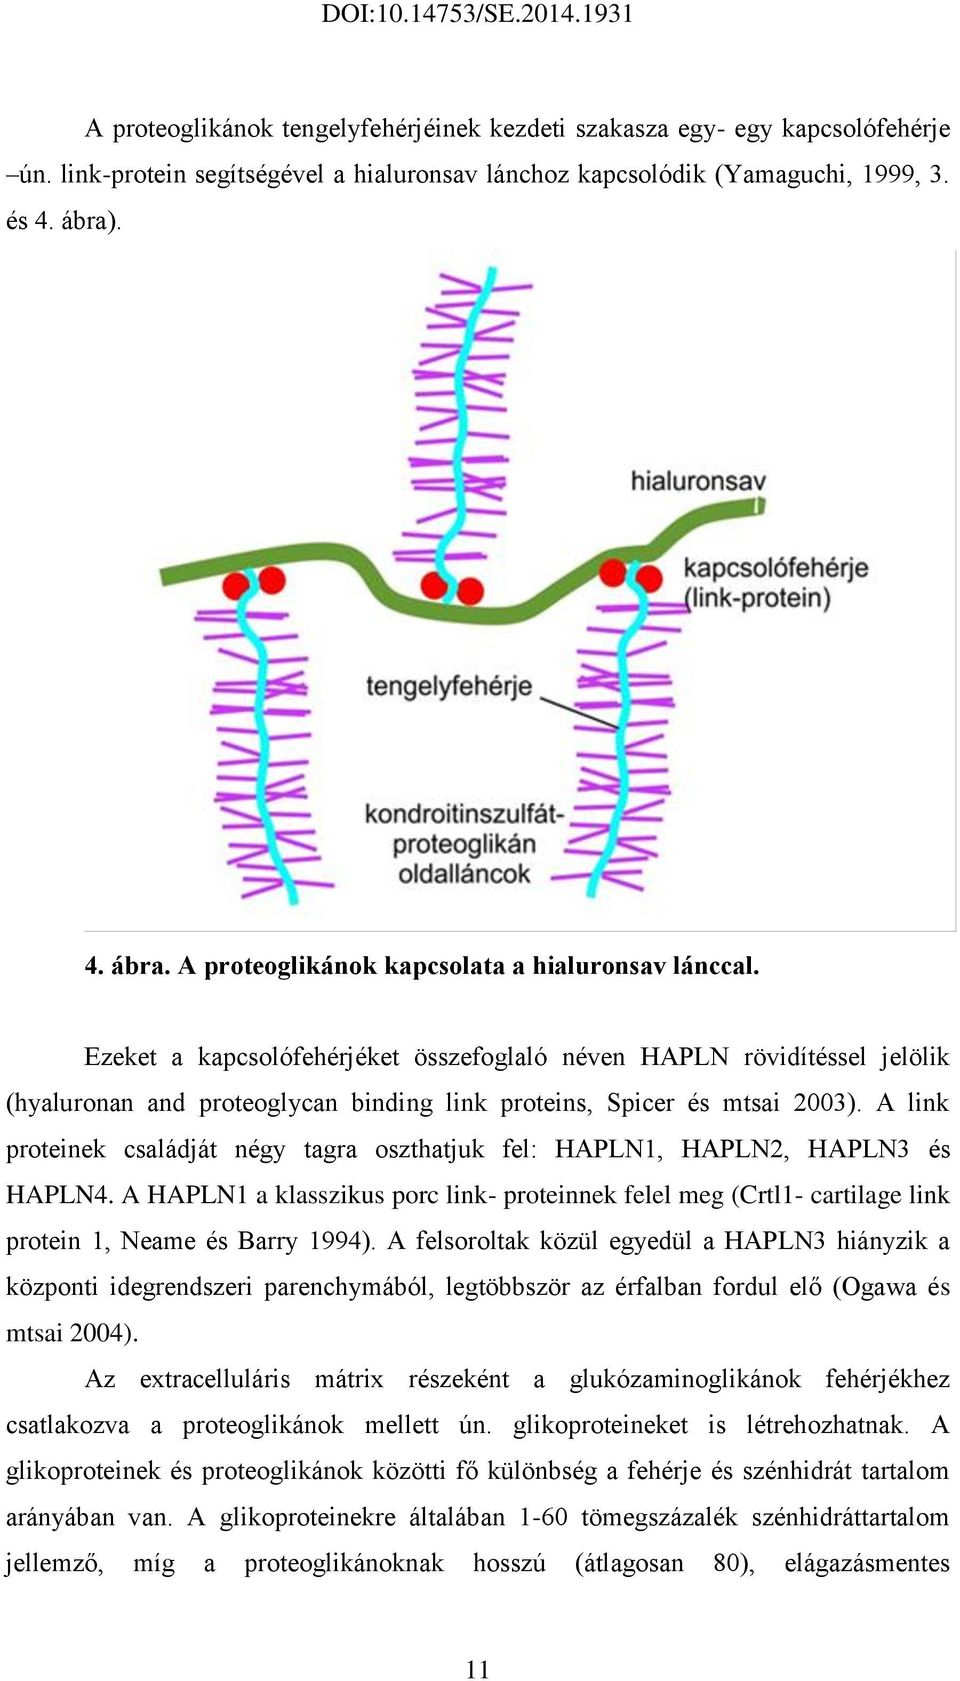 Ezeket a kapcsolófehérjéket összefoglaló néven HAPLN rövidítéssel jelölik (hyaluronan and proteoglycan binding link proteins, Spicer és mtsai 2003).